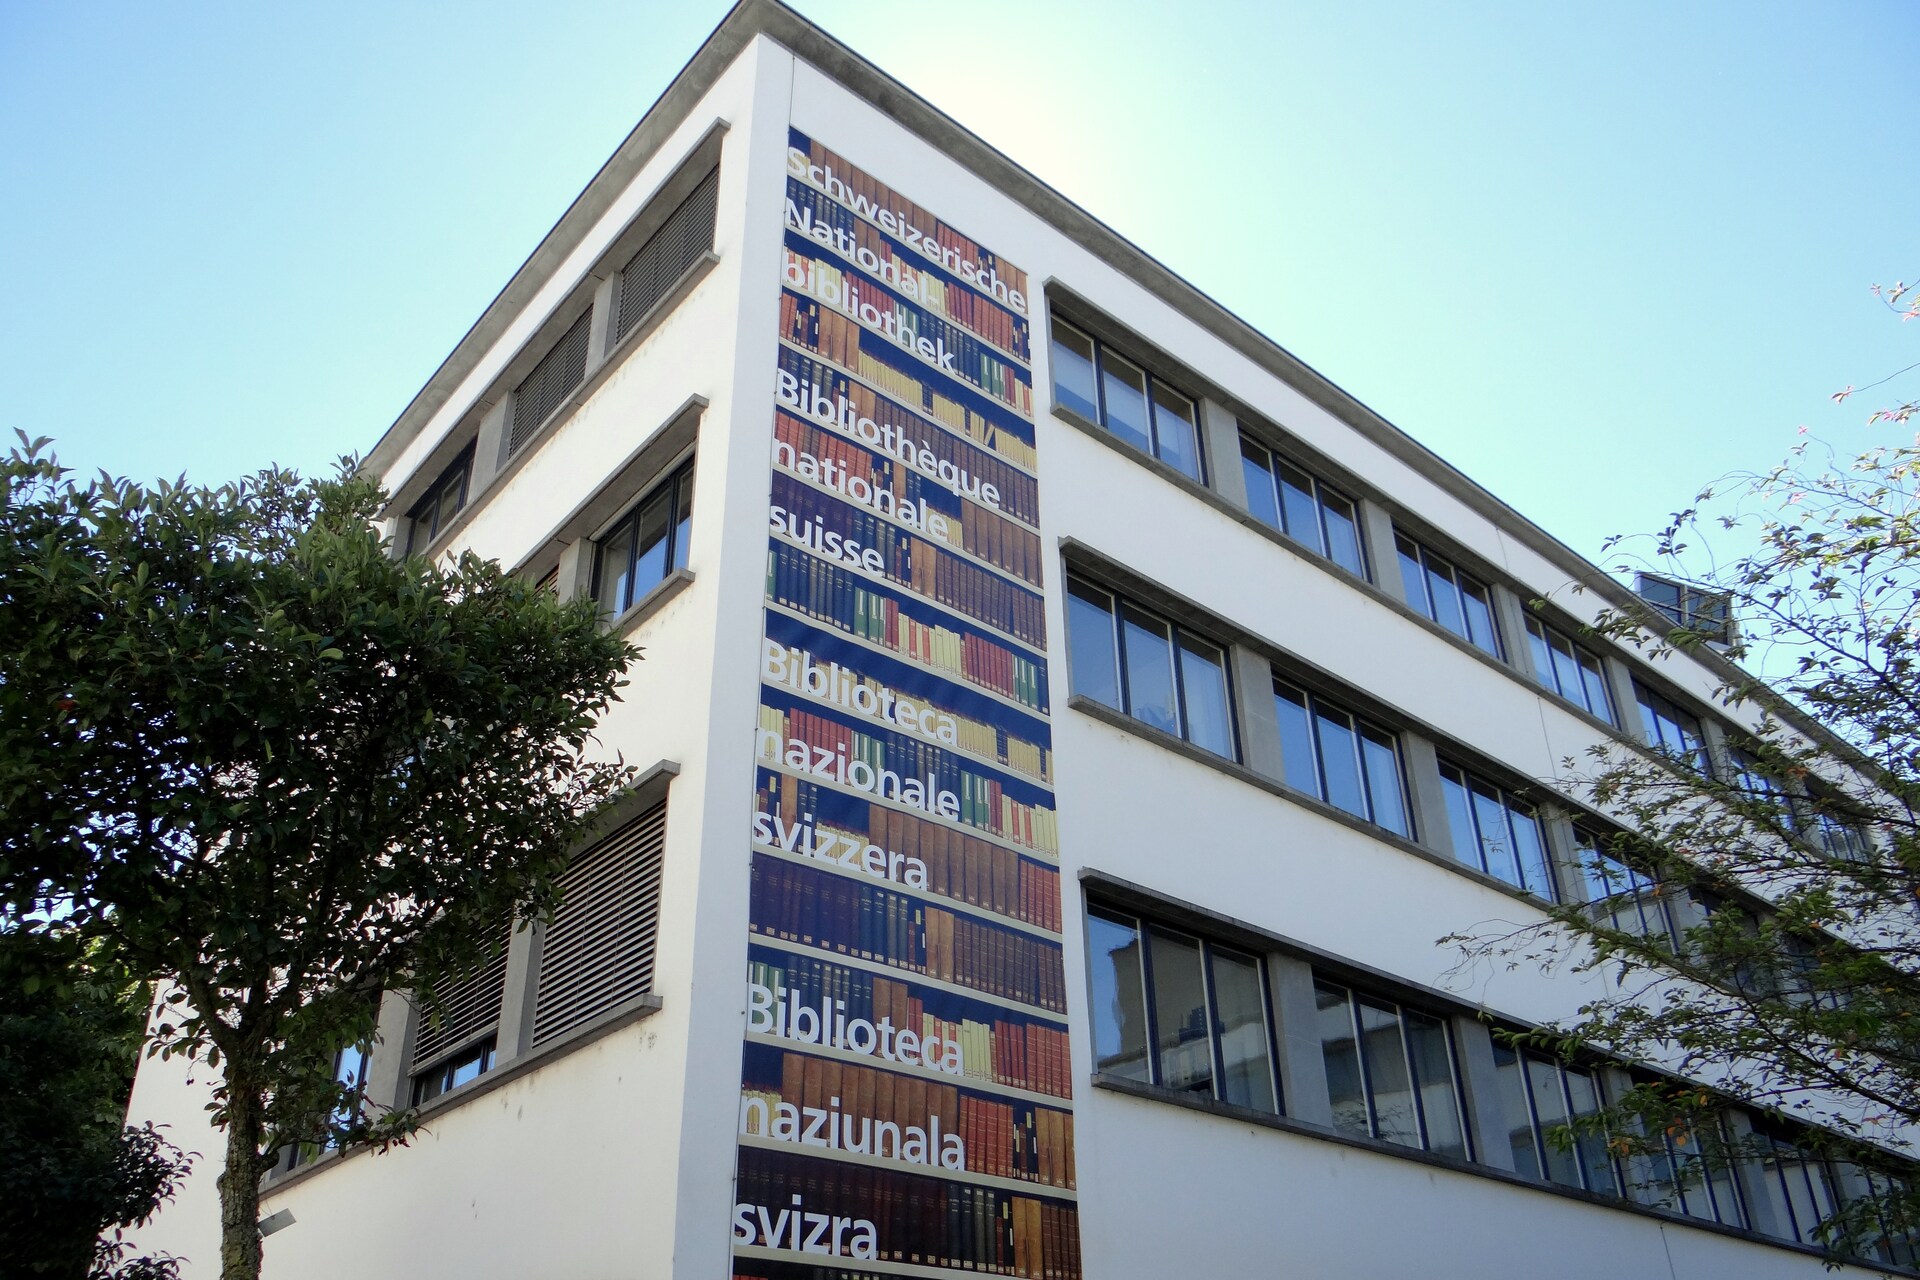 Det sveitsiske nasjonalbiblioteket: NL samler inn Helvetica, dvs. tekster, bilder og lyddokumenter knyttet til Sveits, og bevarer dermed det kollektive minnet om landet i Bern